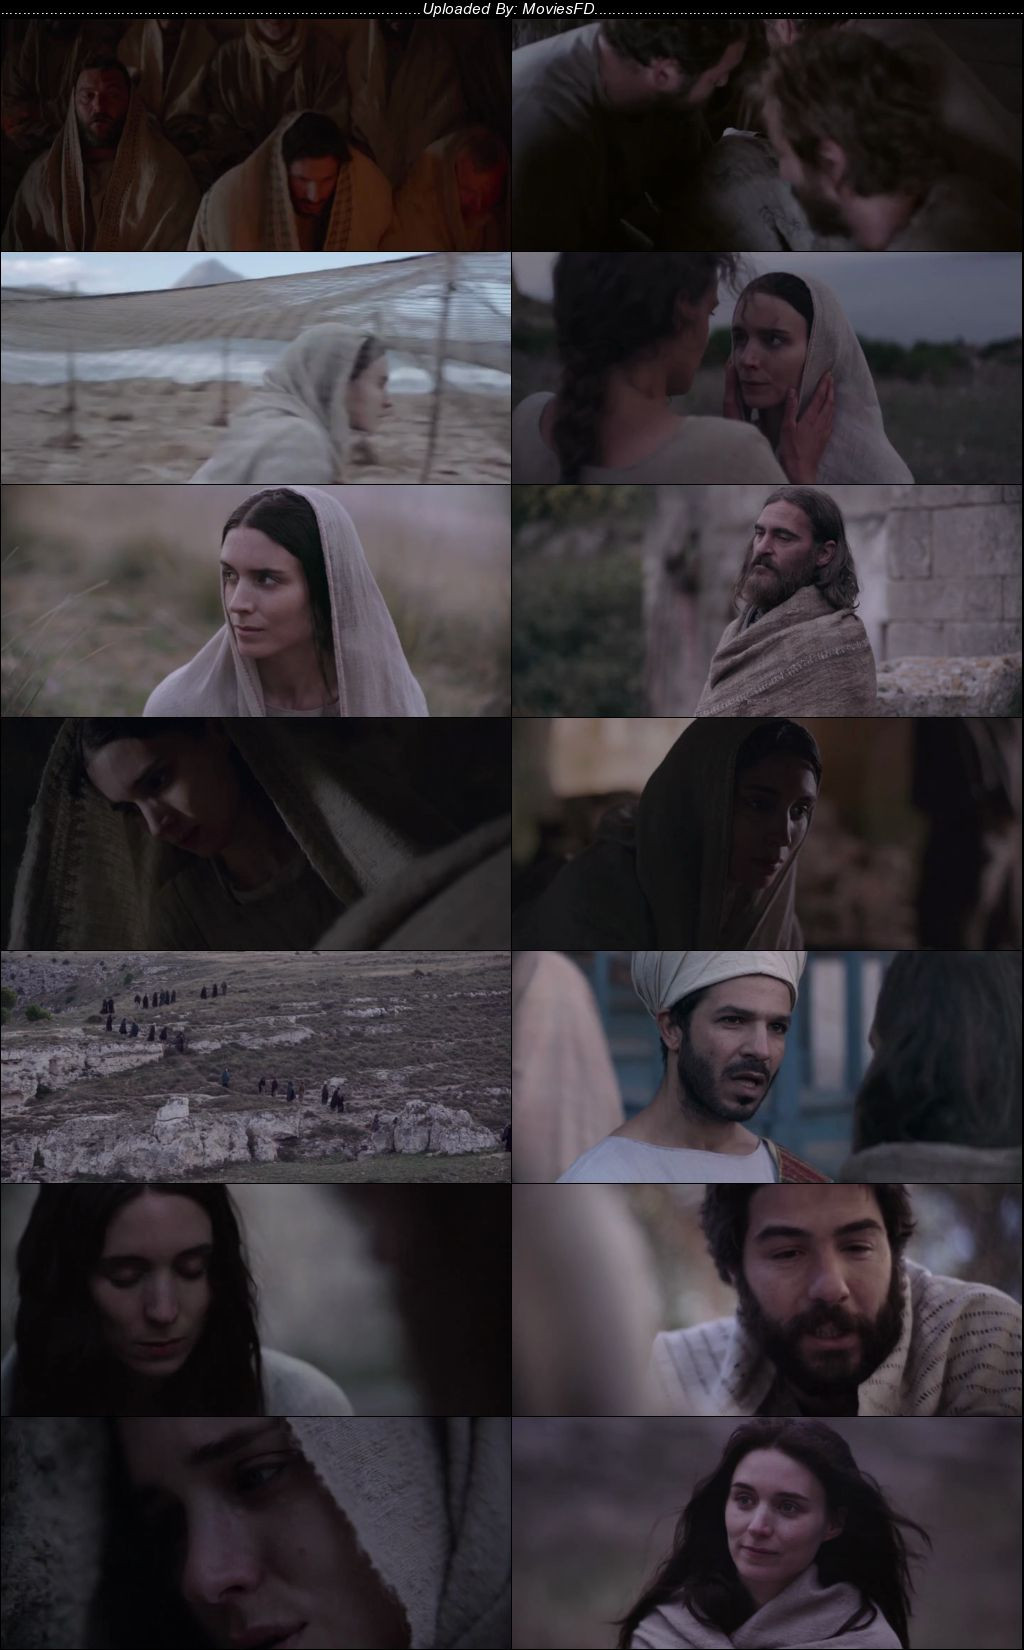 Download Mary Magdalene (2018) BluRay [Hindi + English] ESub 480p 720p